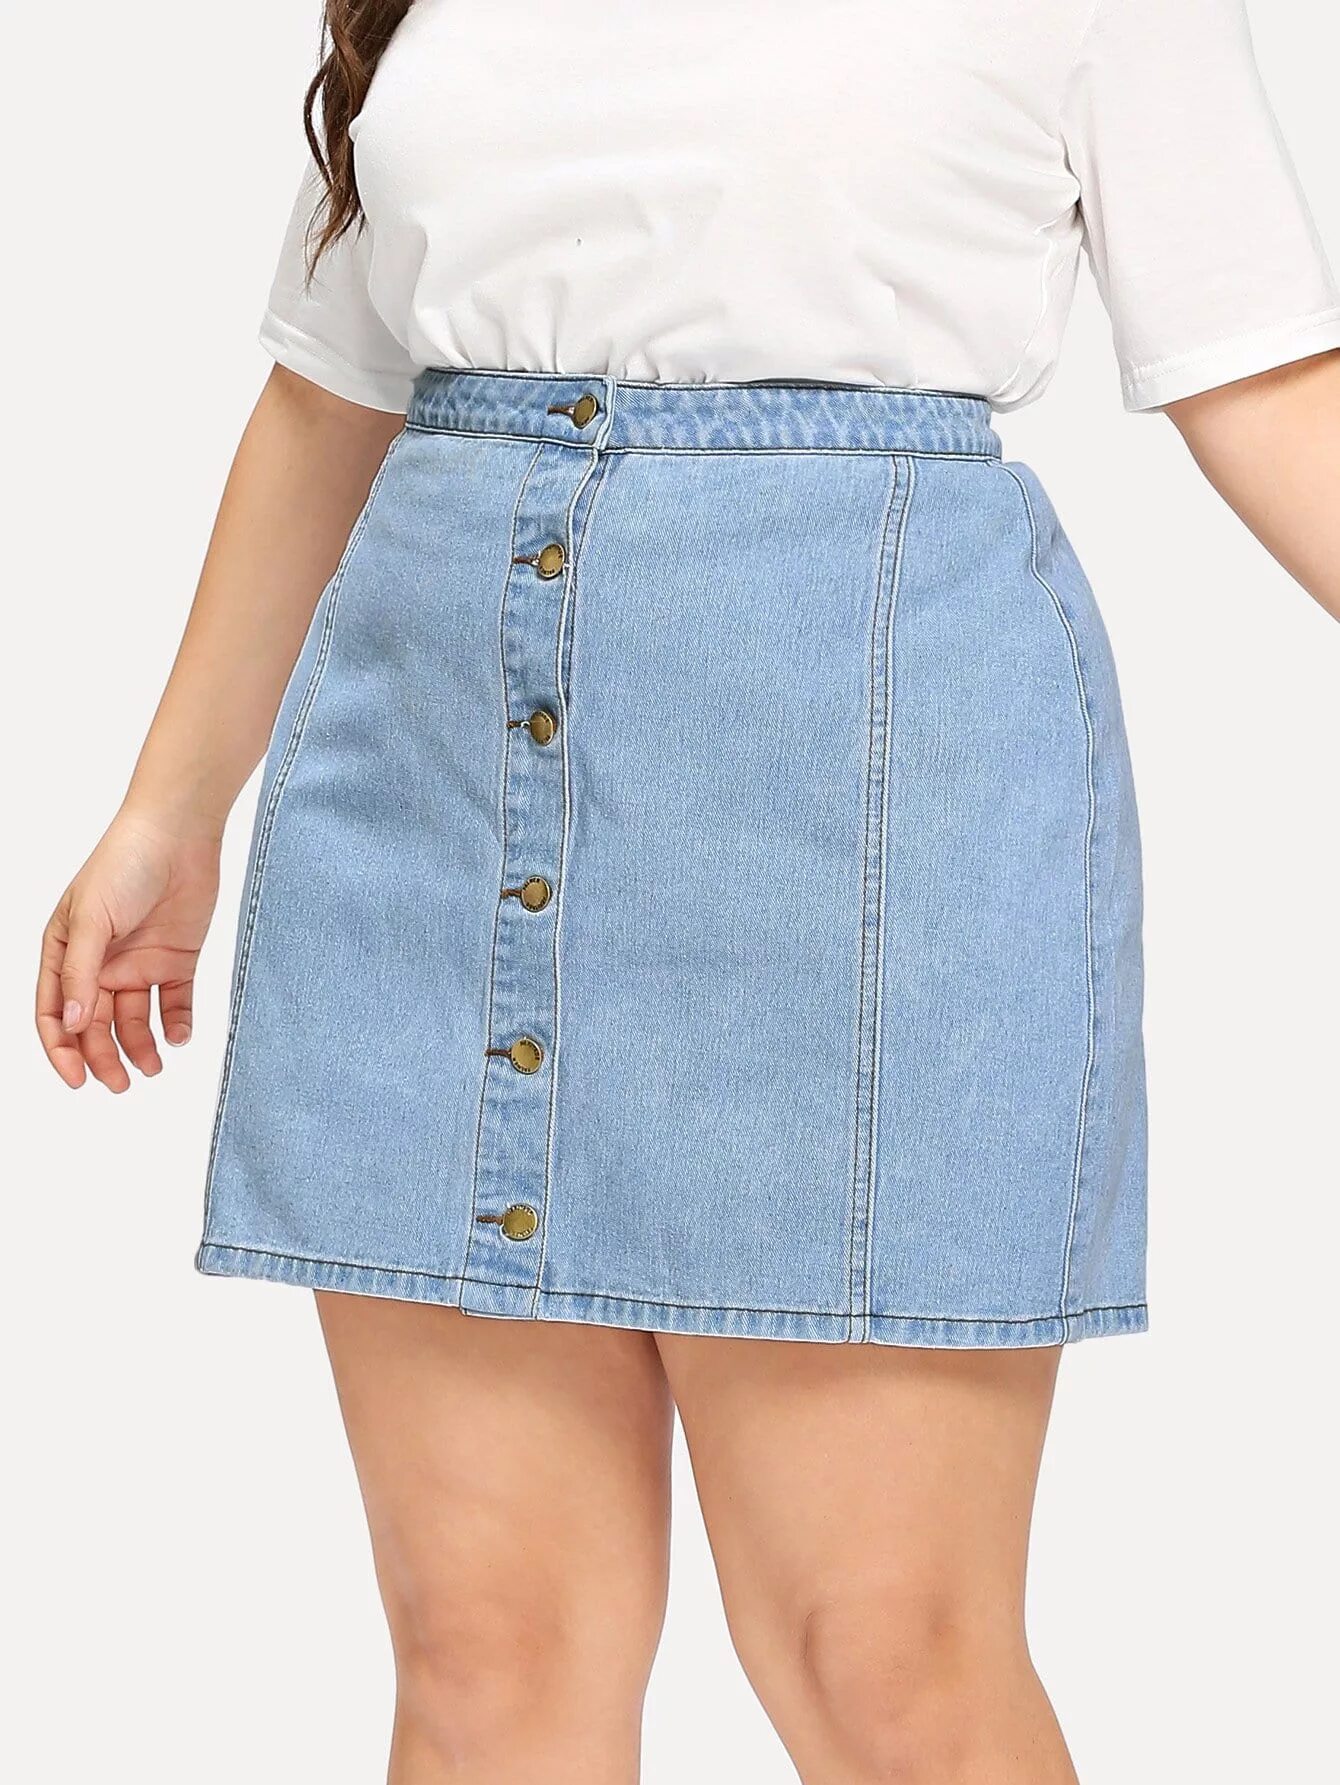 Купить джинсовую юбку в интернет. Валберис джинсовые юбки женские. Юбка джинсовая 2021 плюс сайз. Джинсовая юбка миди плюс сайз. Джинсовые юбки для полных.